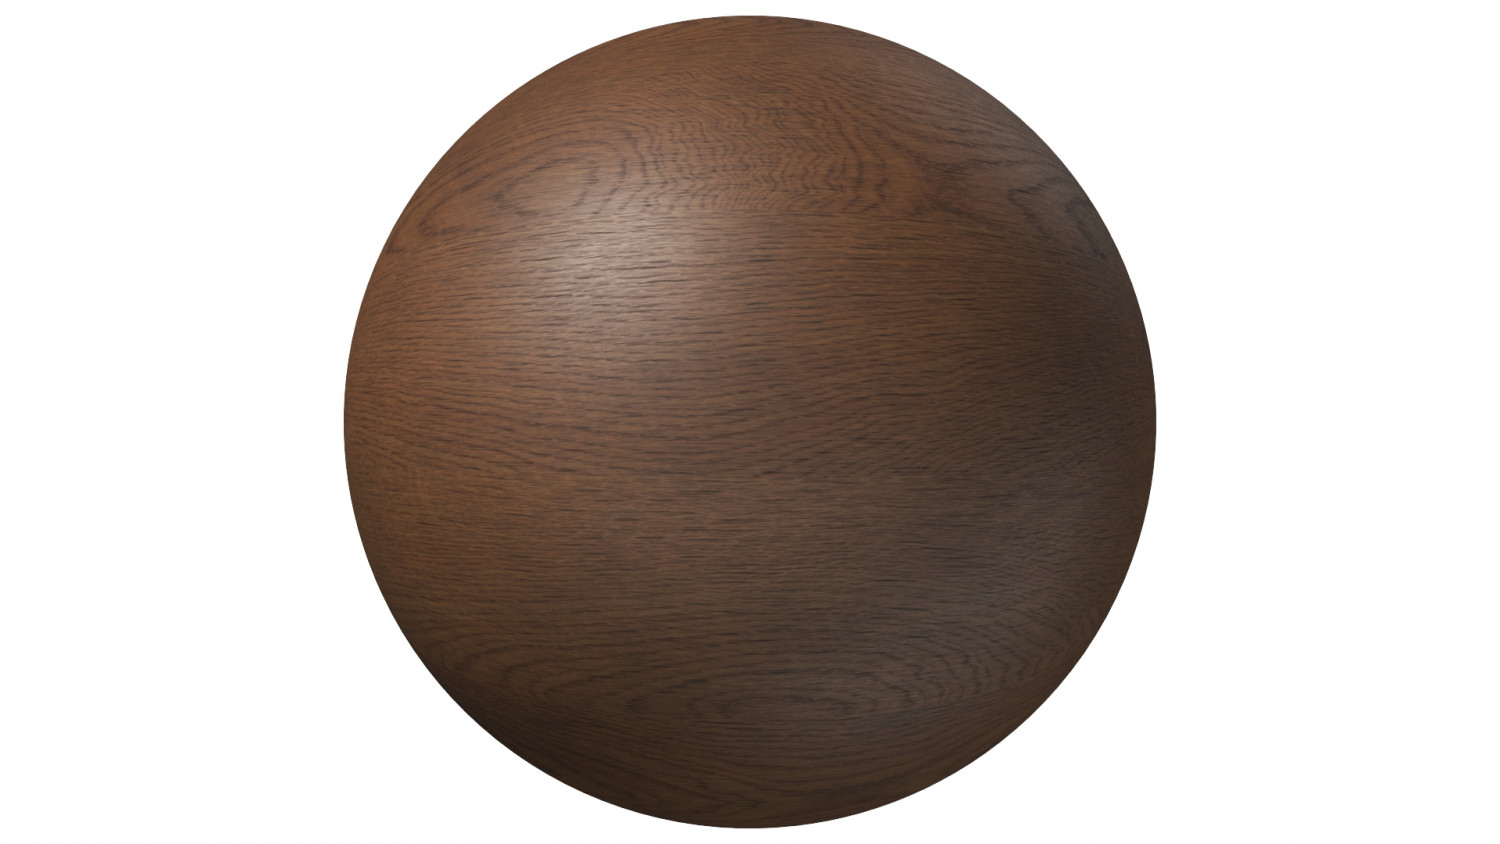 Oak veneer wood texture